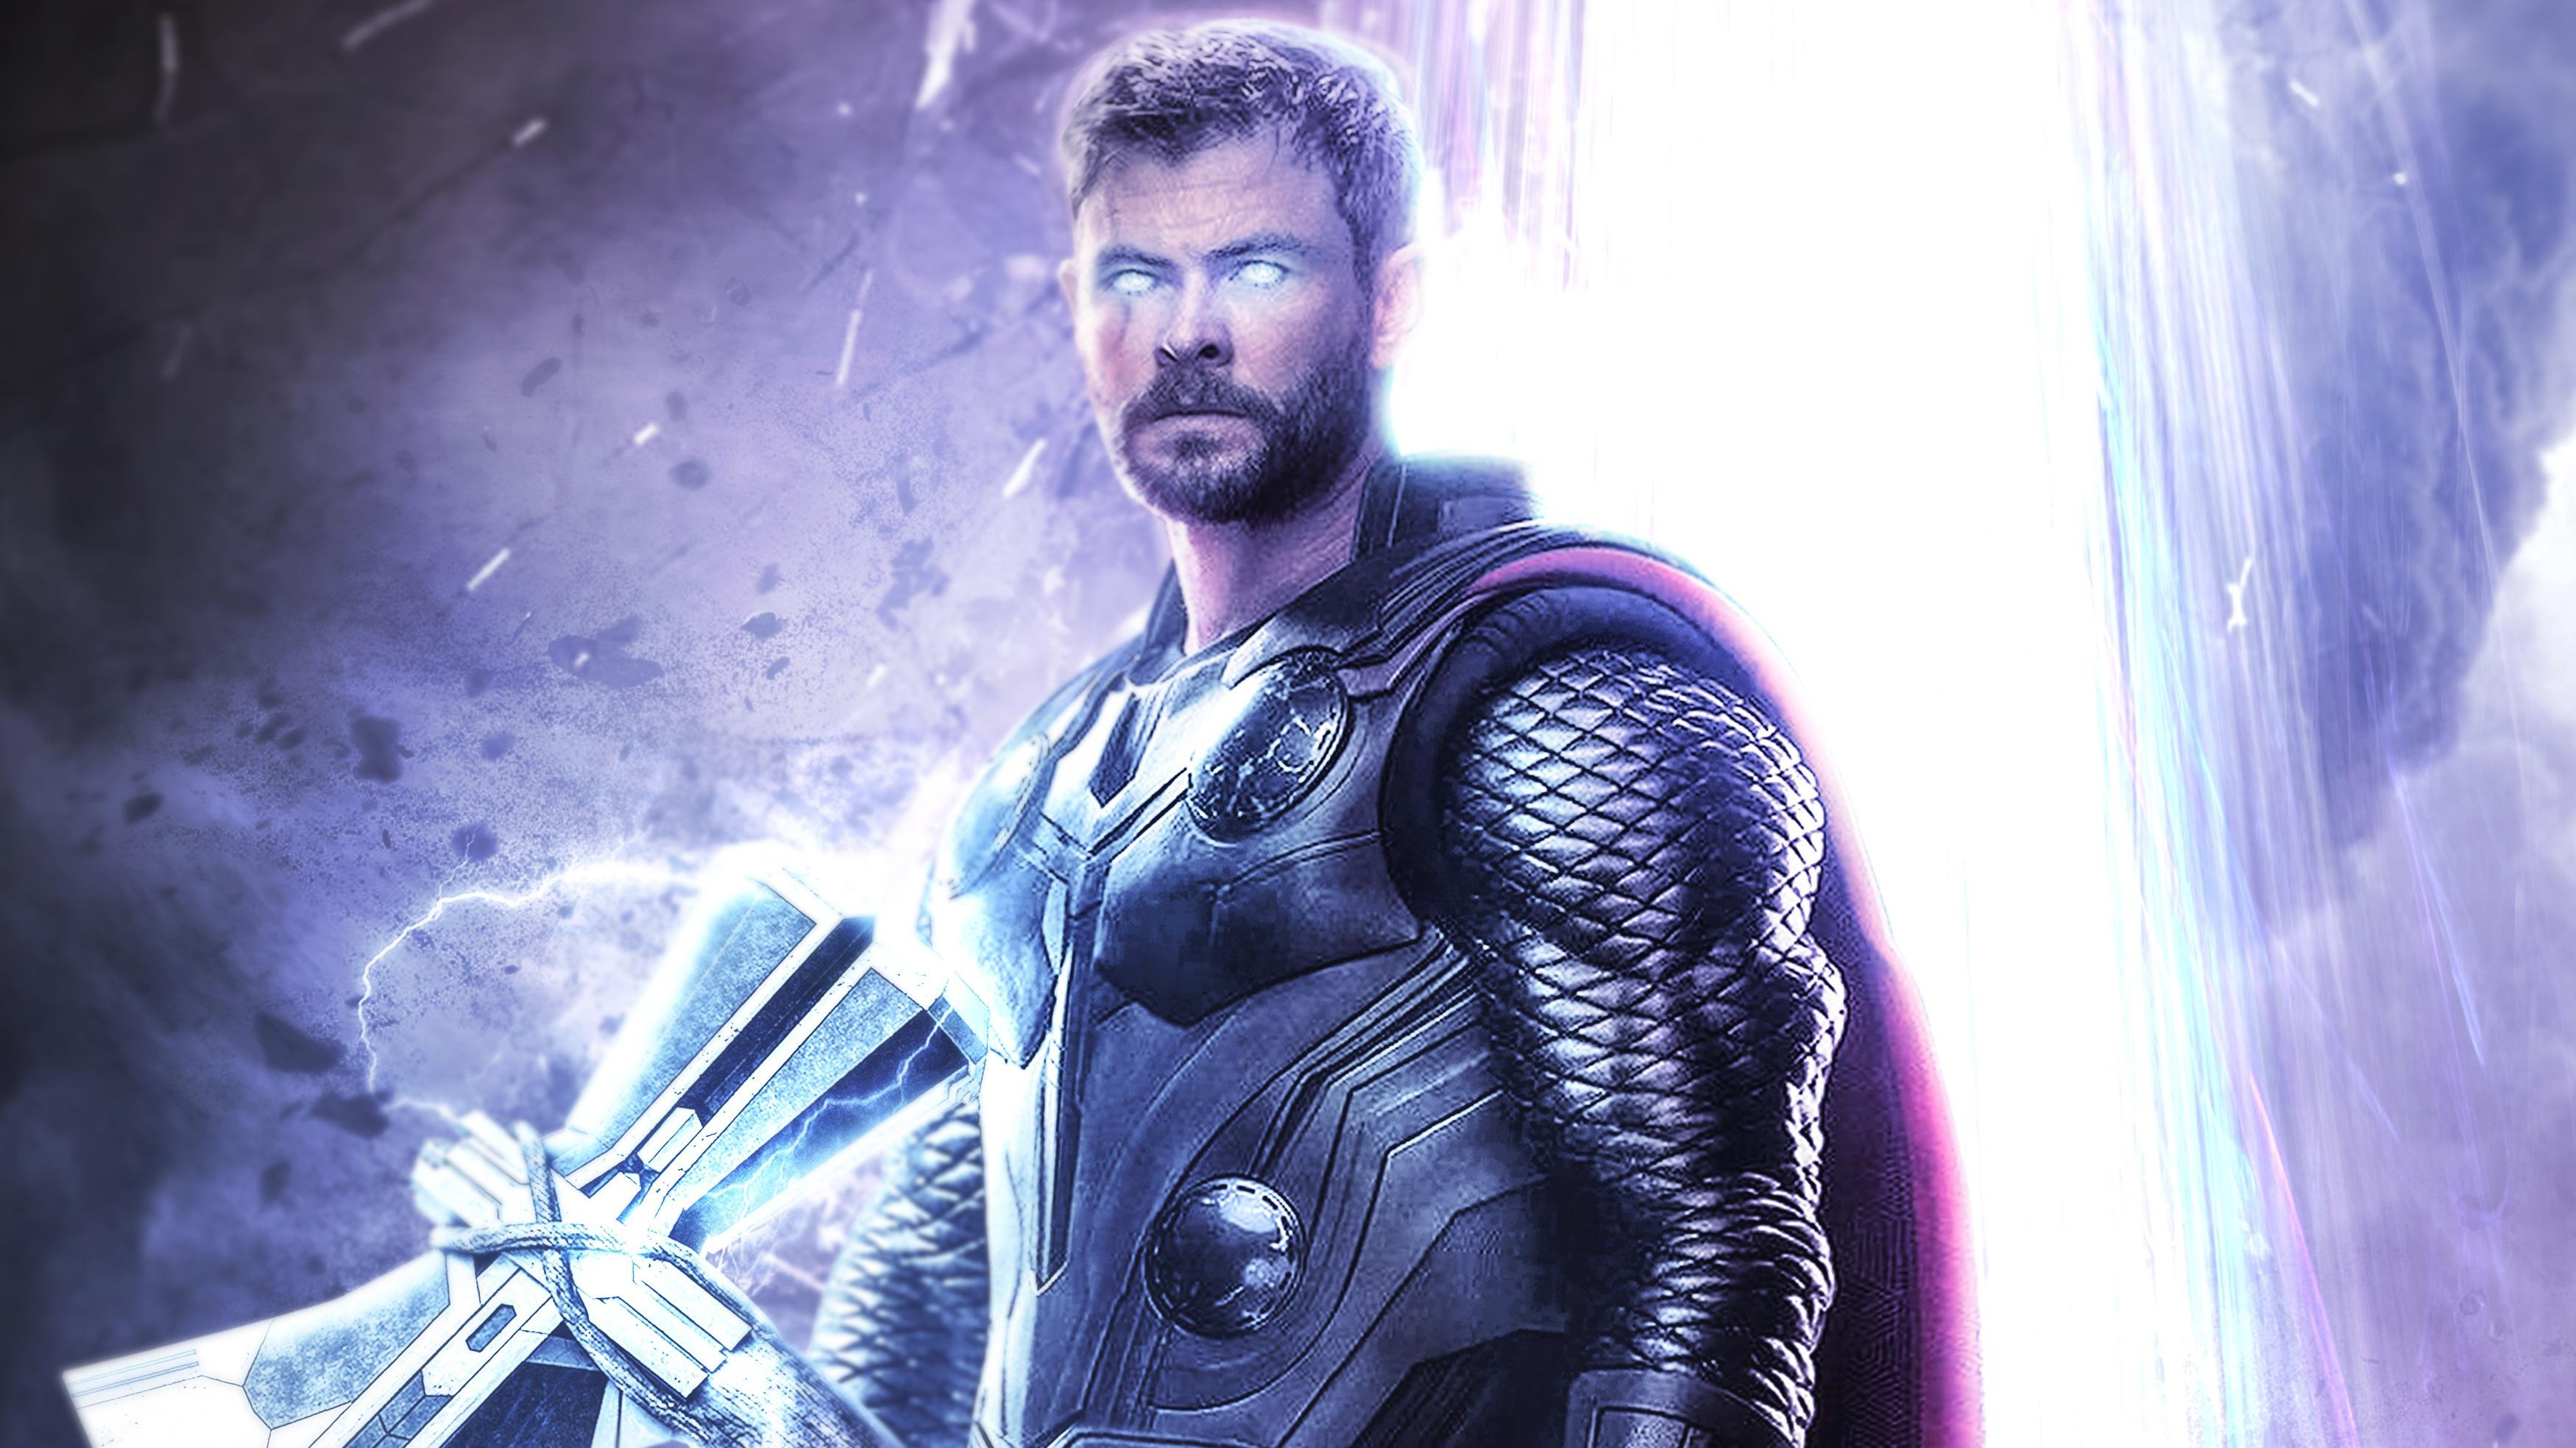 Thor Avengers Endgame Artwork Wallpapers